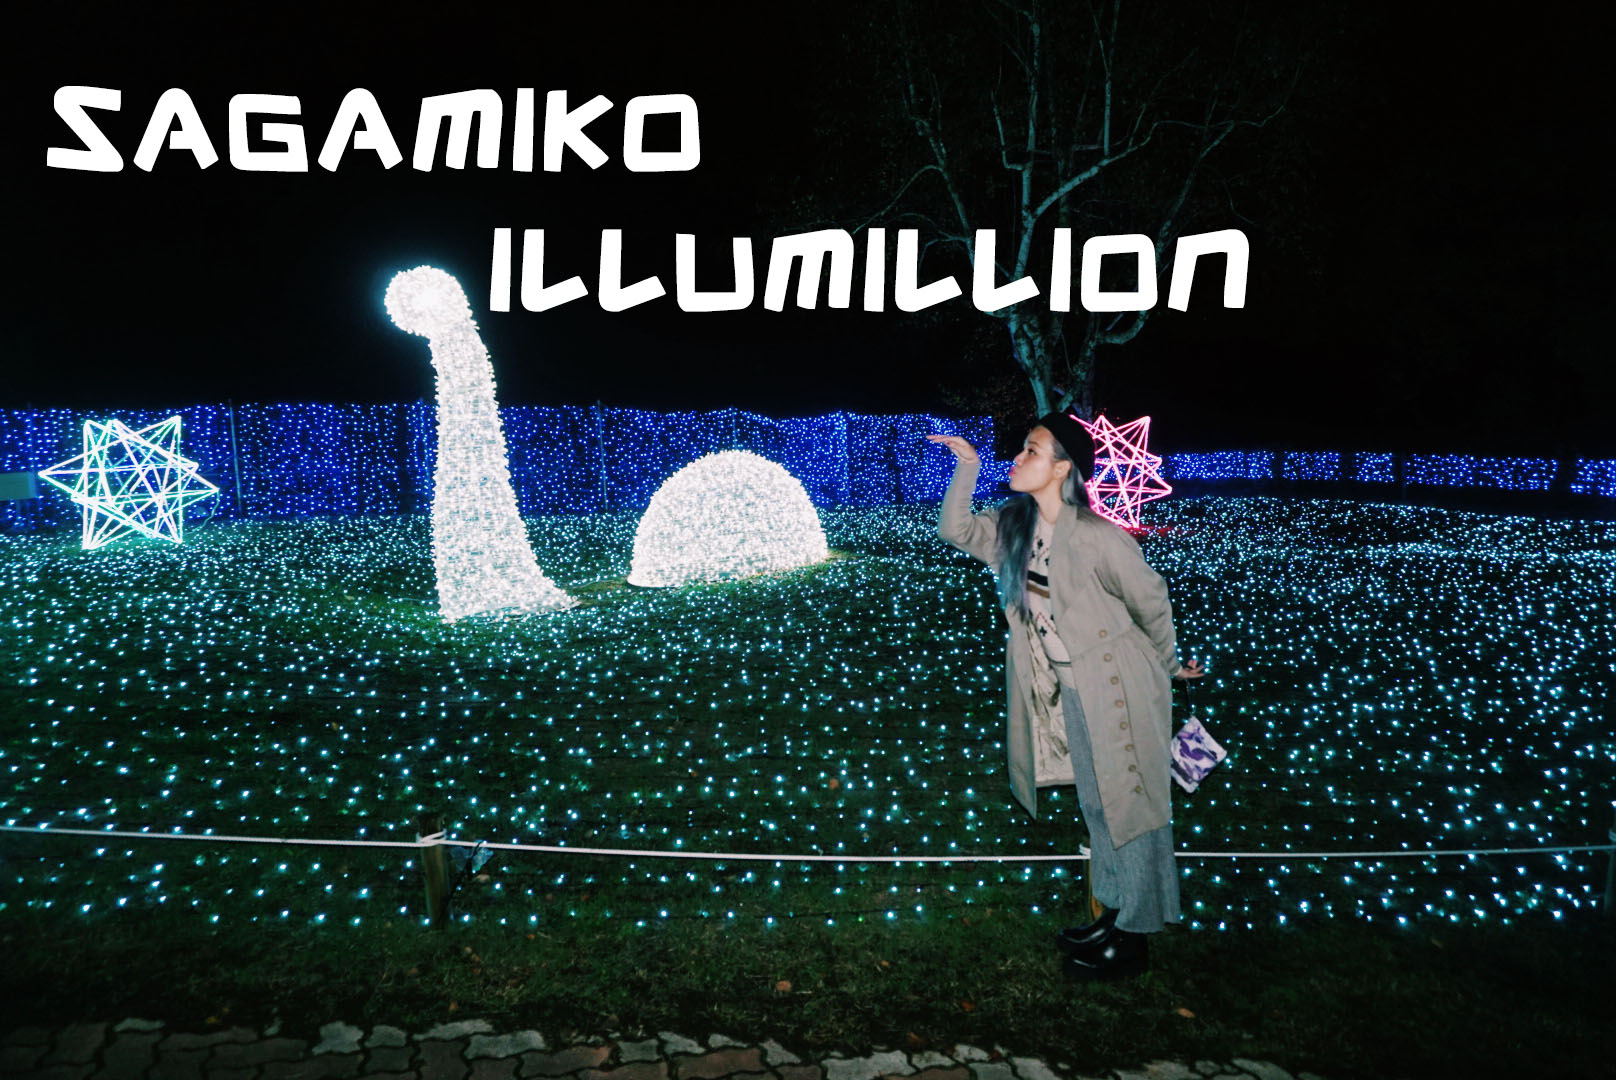 ชะนีหนีเที่ยว Ep.01 SAGAMIKO ILLUMINATION 2015 พาดูไฟที่ญี่ปุ่น!